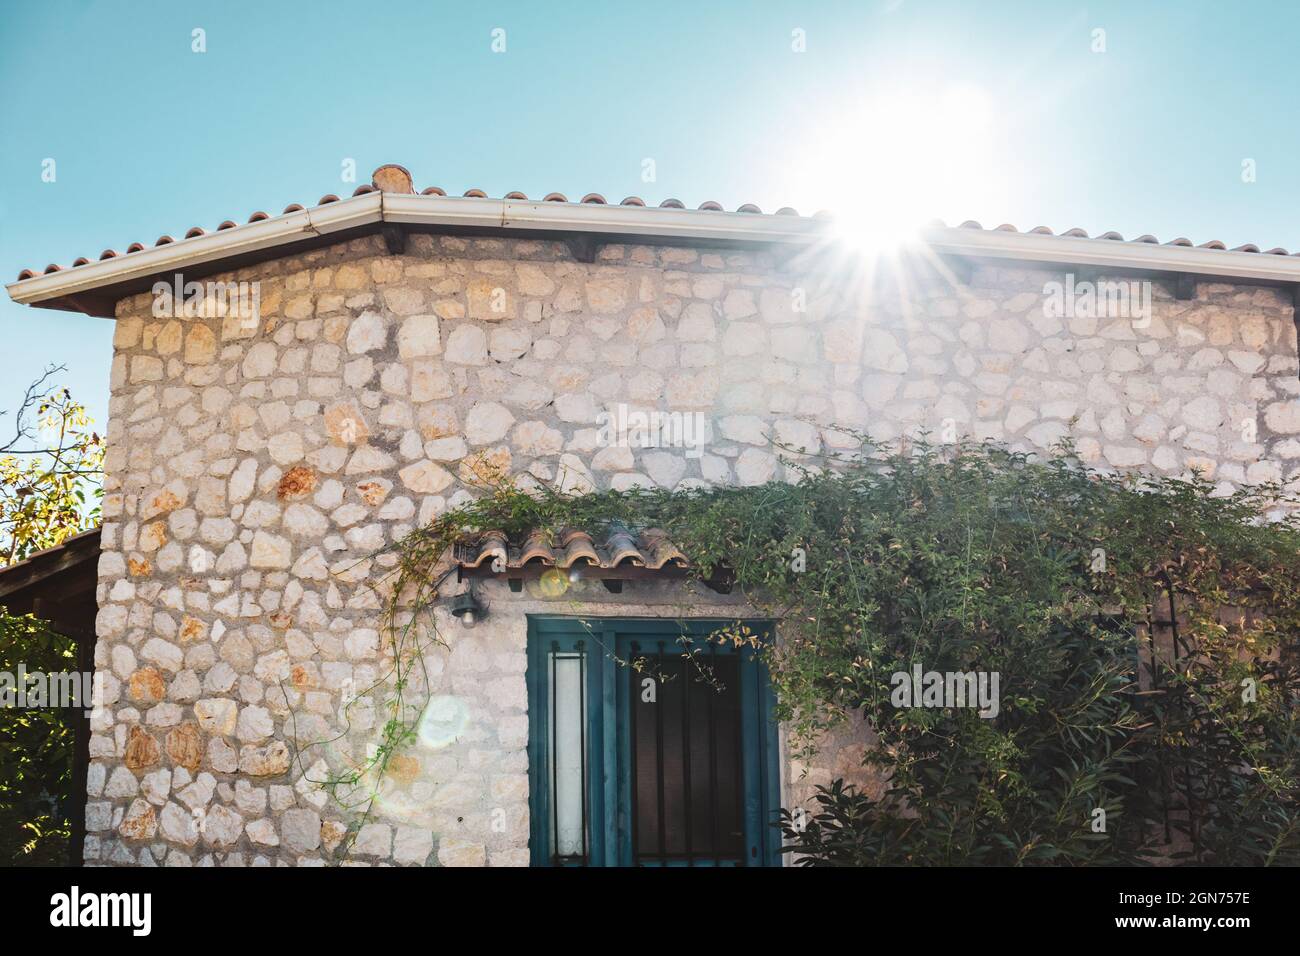 Le soleil brille au-dessus du toit traditionnel grec de la maison avec des murs en pierre, des volets de portes bleues et des branches d'arbres vertes. Voyage d'été en Méditerranée traditionnelle Banque D'Images